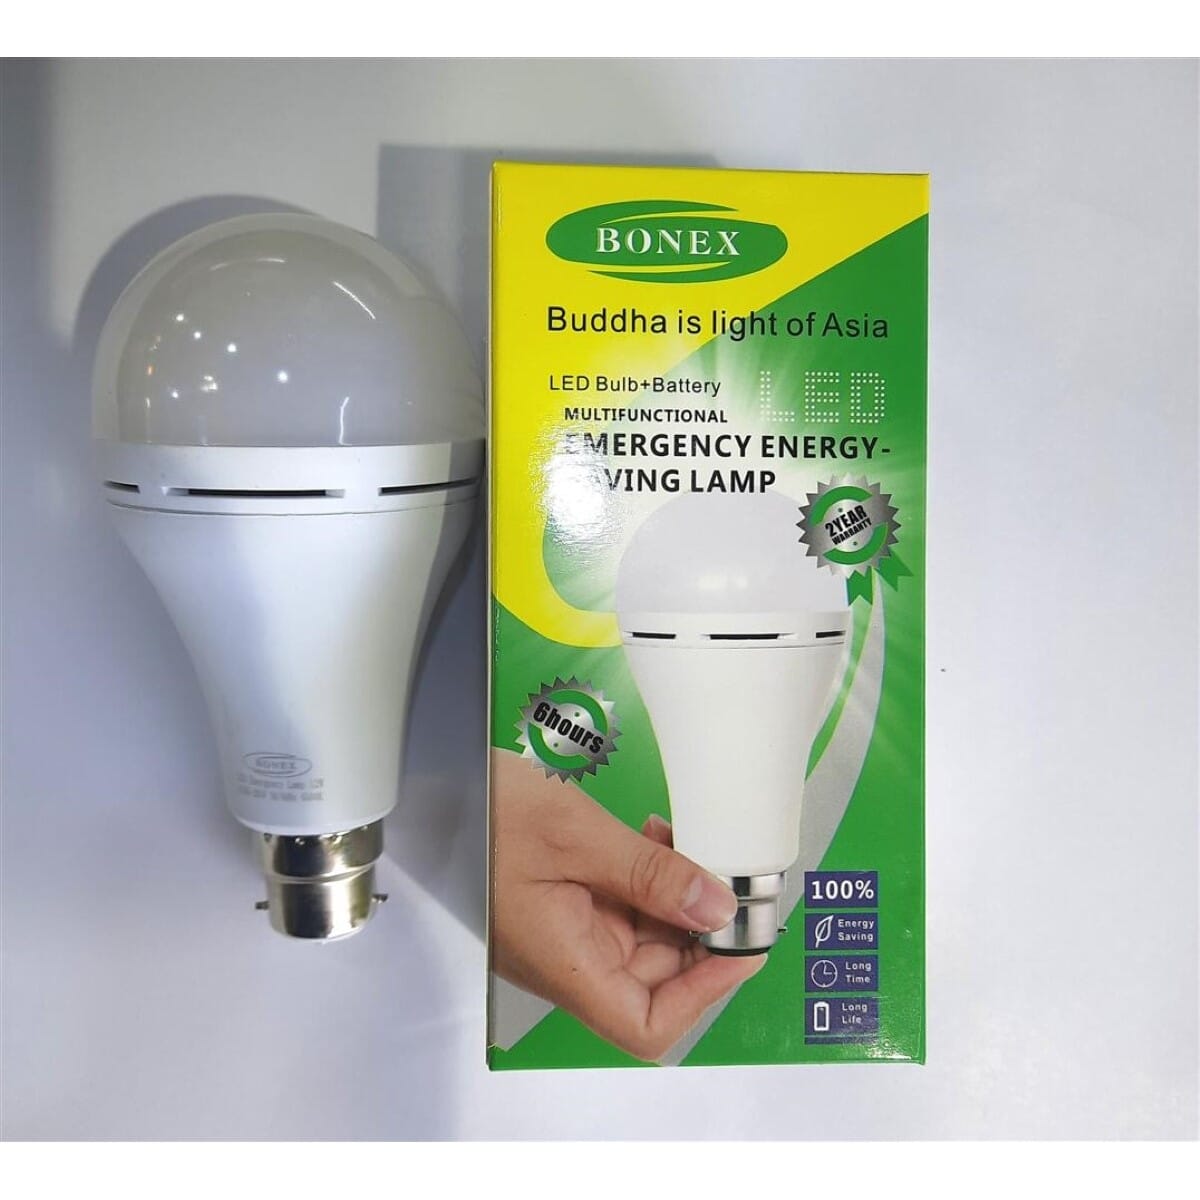  multifunctional emergency LED bulb